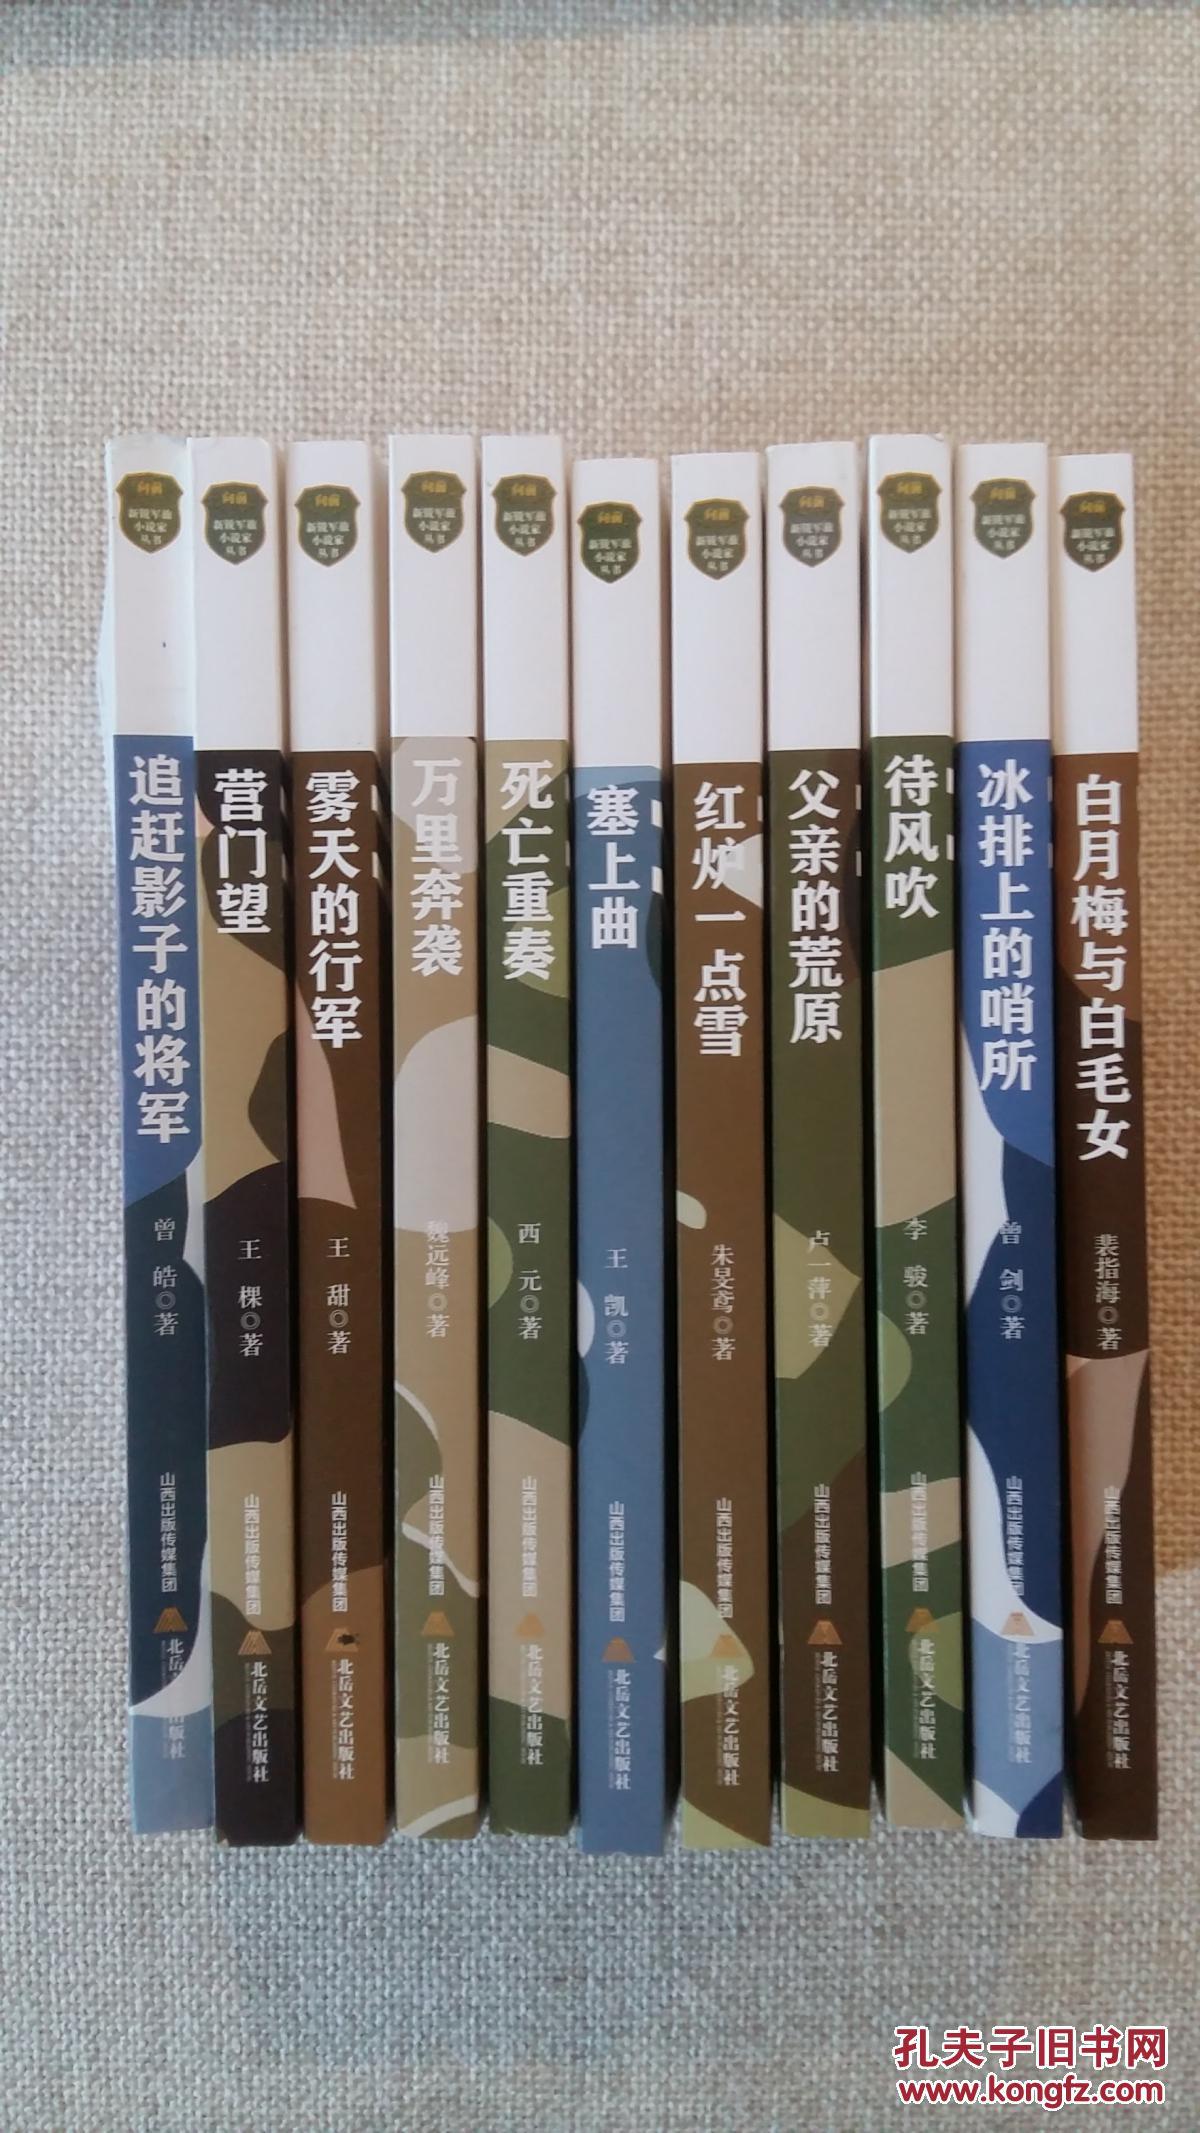 【图】向前--新锐军旅小说家丛书(共11册,白月